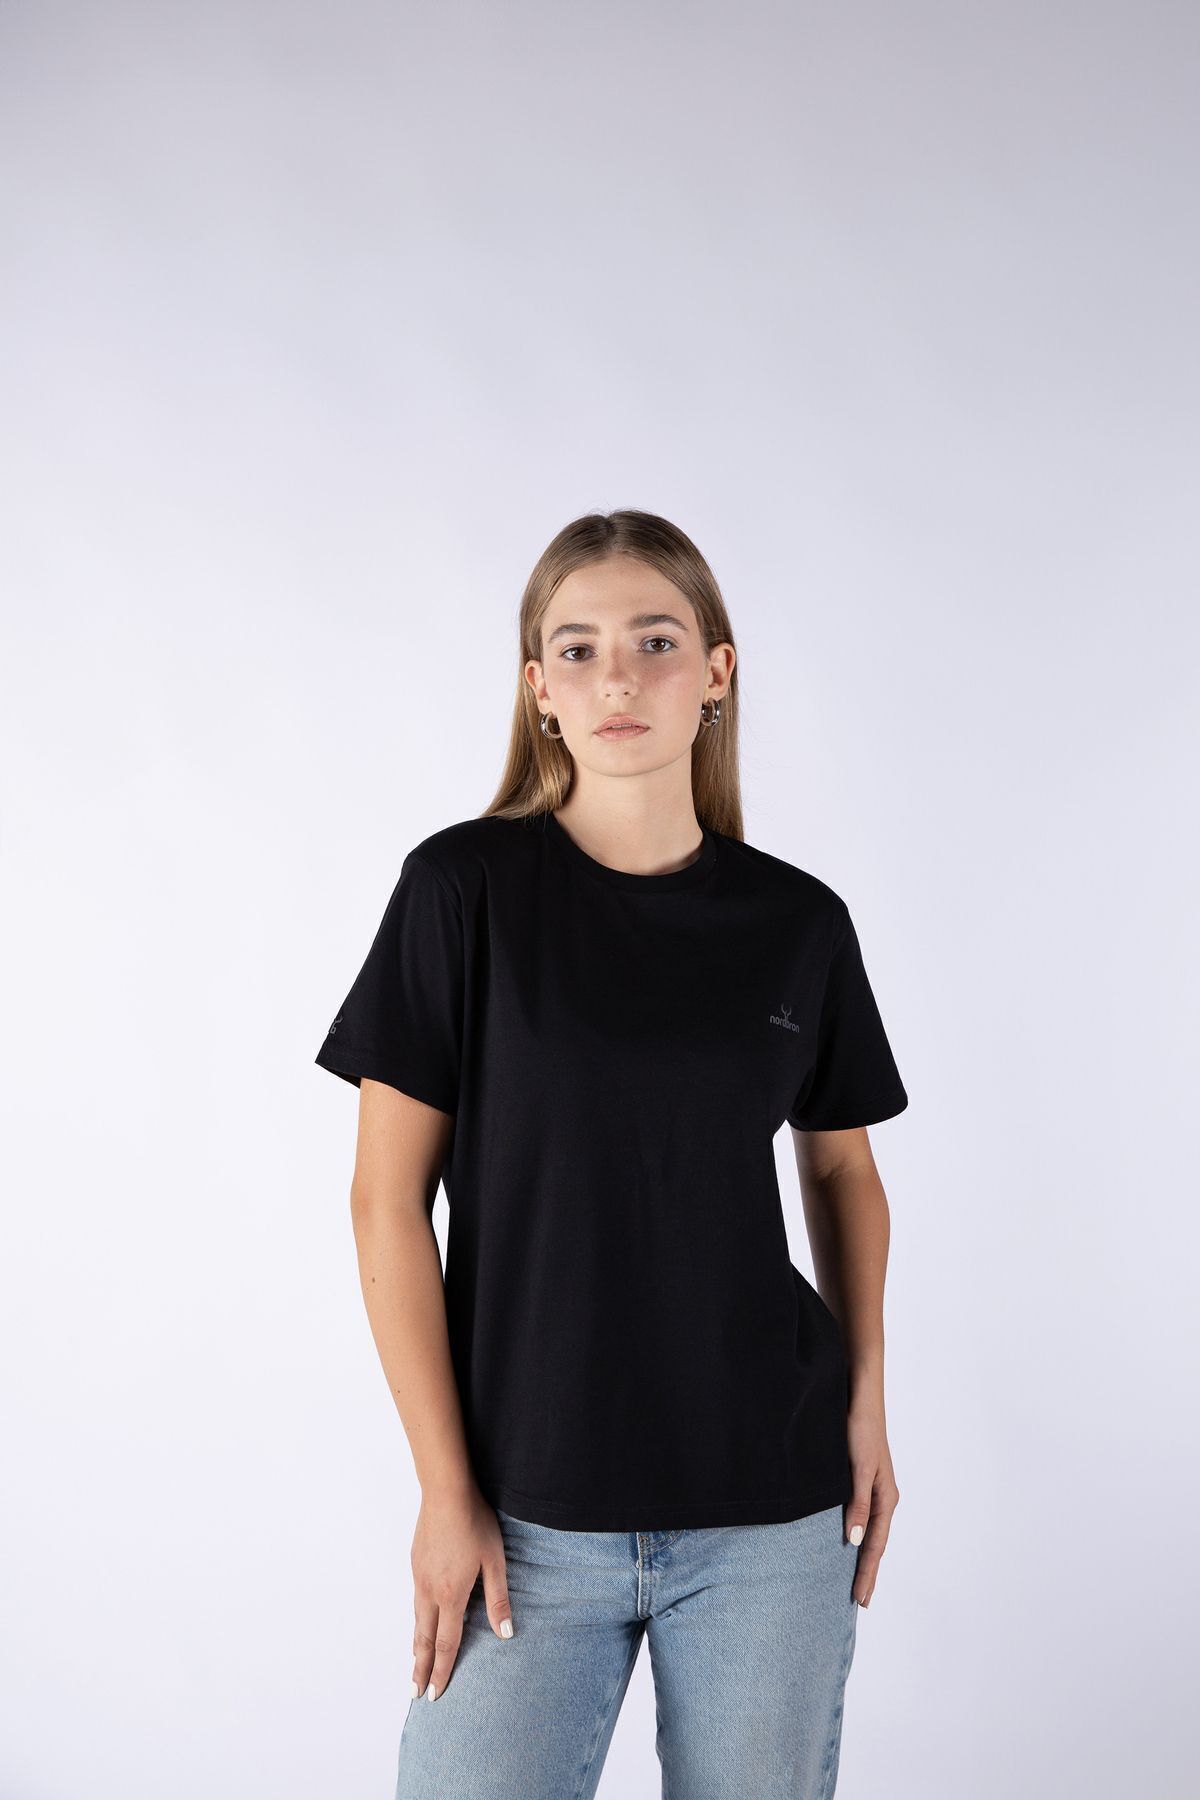 Nordbron Kadın Siyah %100 Pamuk Baskılı Basic Örme T-shirt Kısa Kollu Bisiklet Yaka Detaylı Günlük Fit